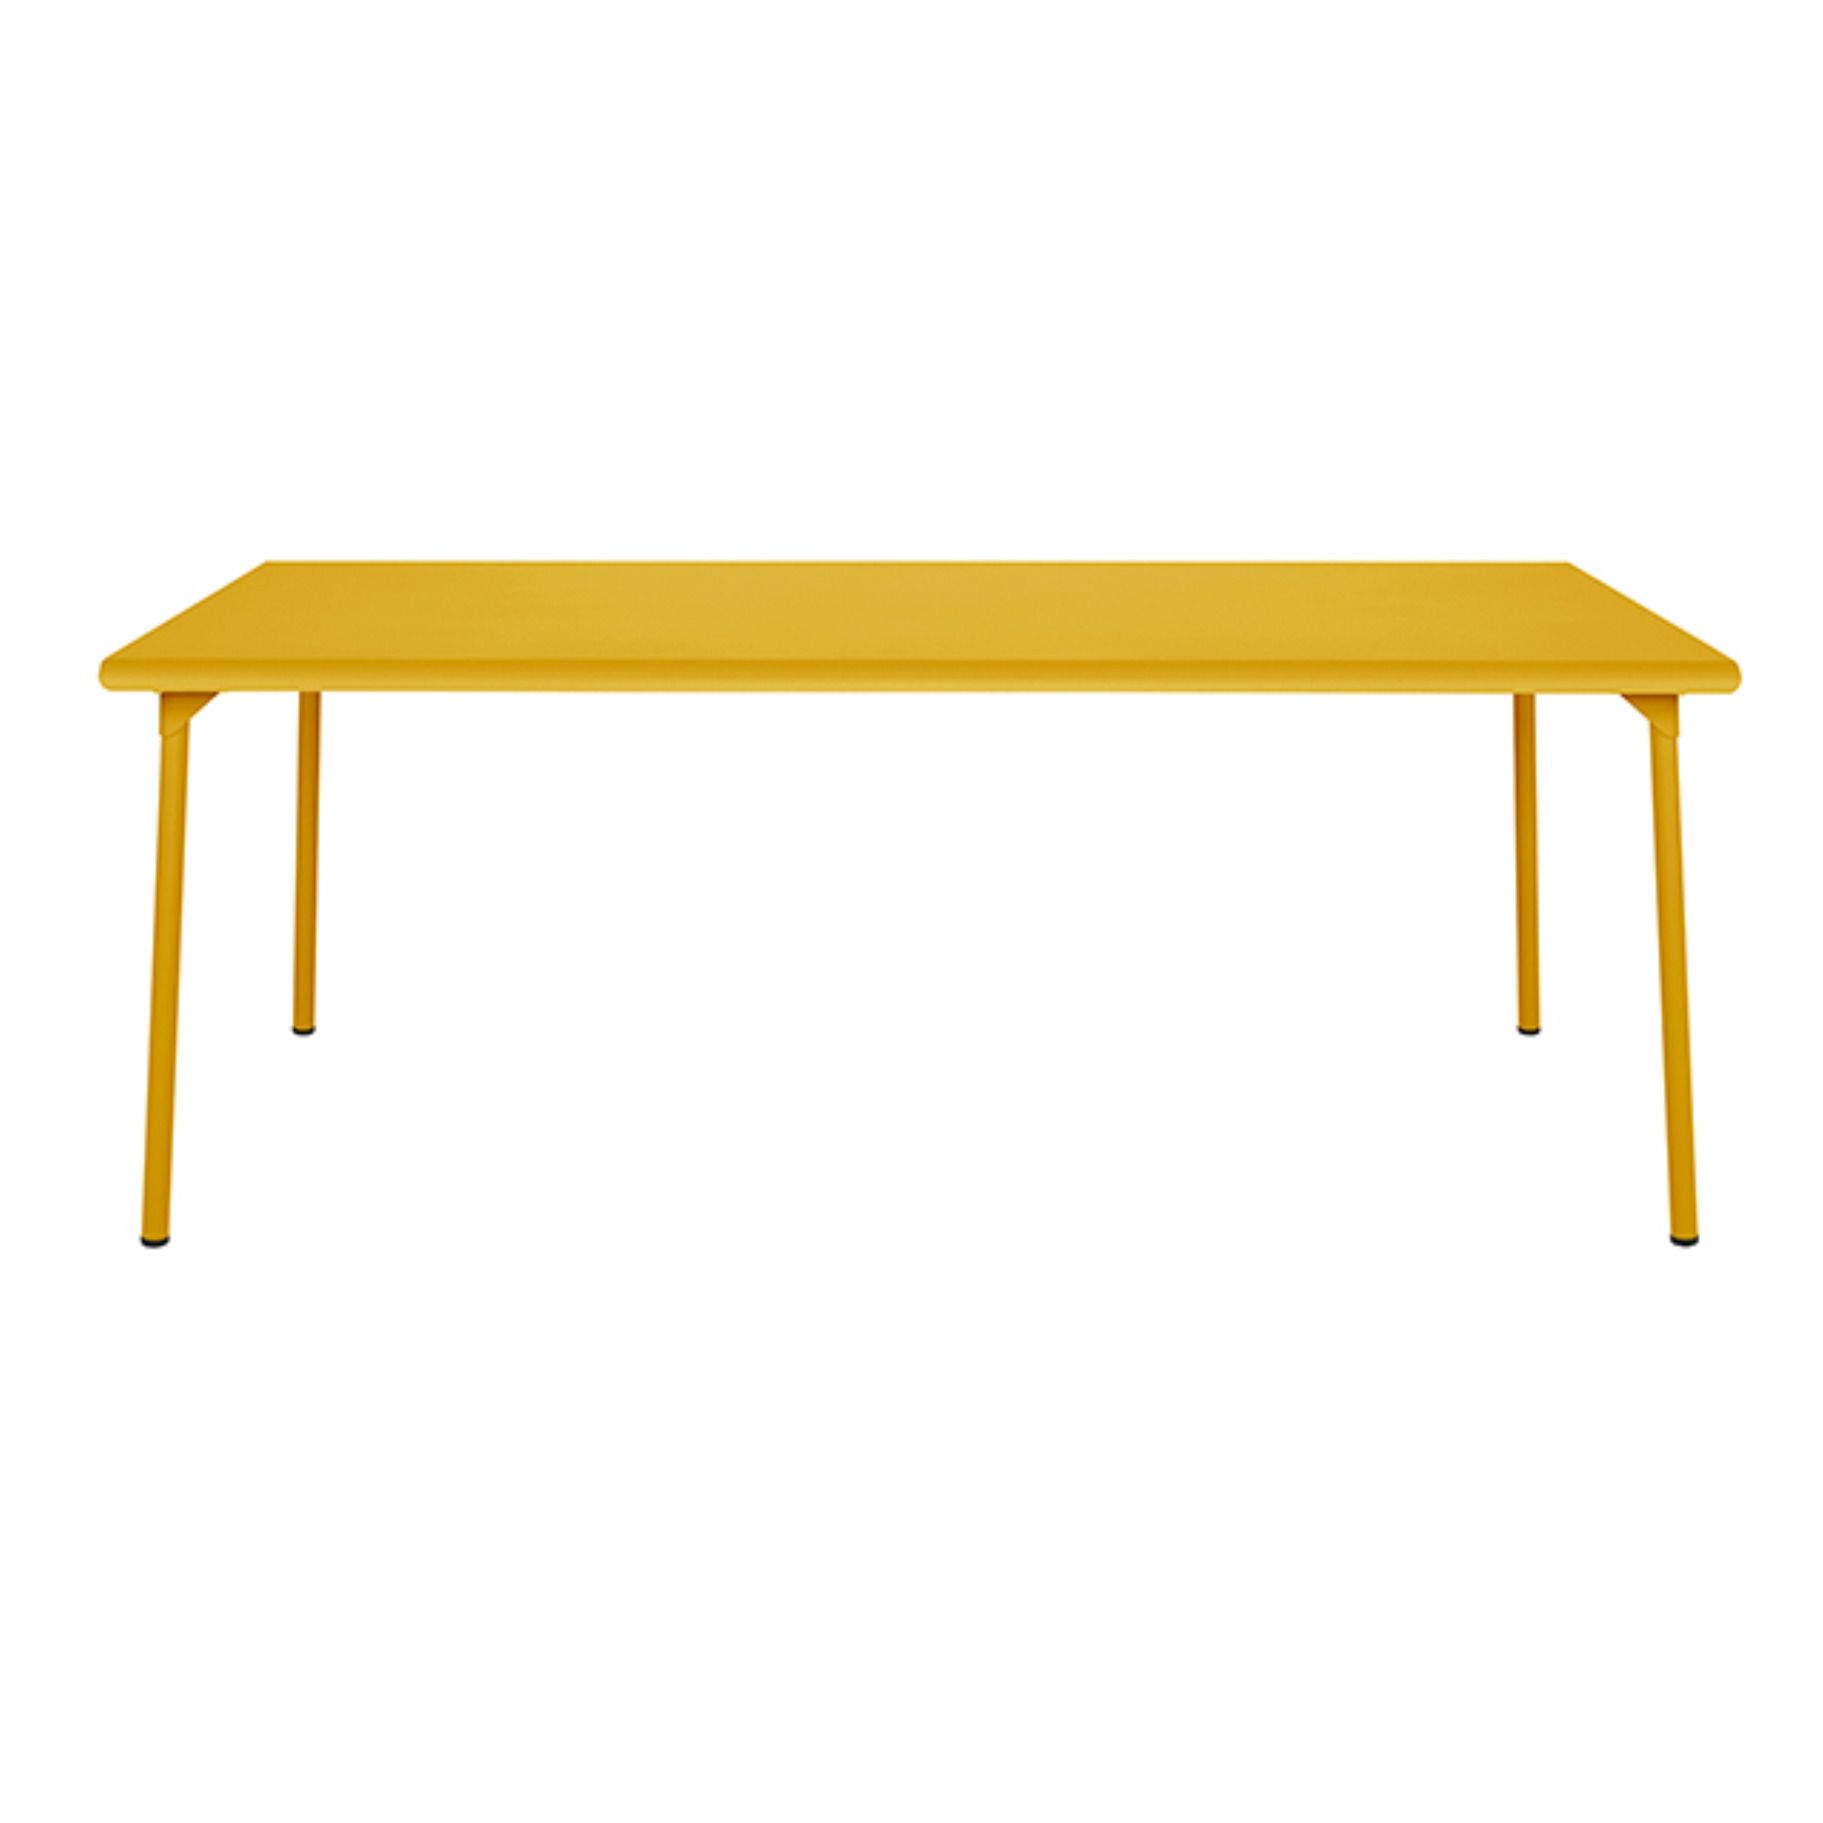 Tolix - Table outdoor Patio en inox - 200x100 cm - Jaune moutarde